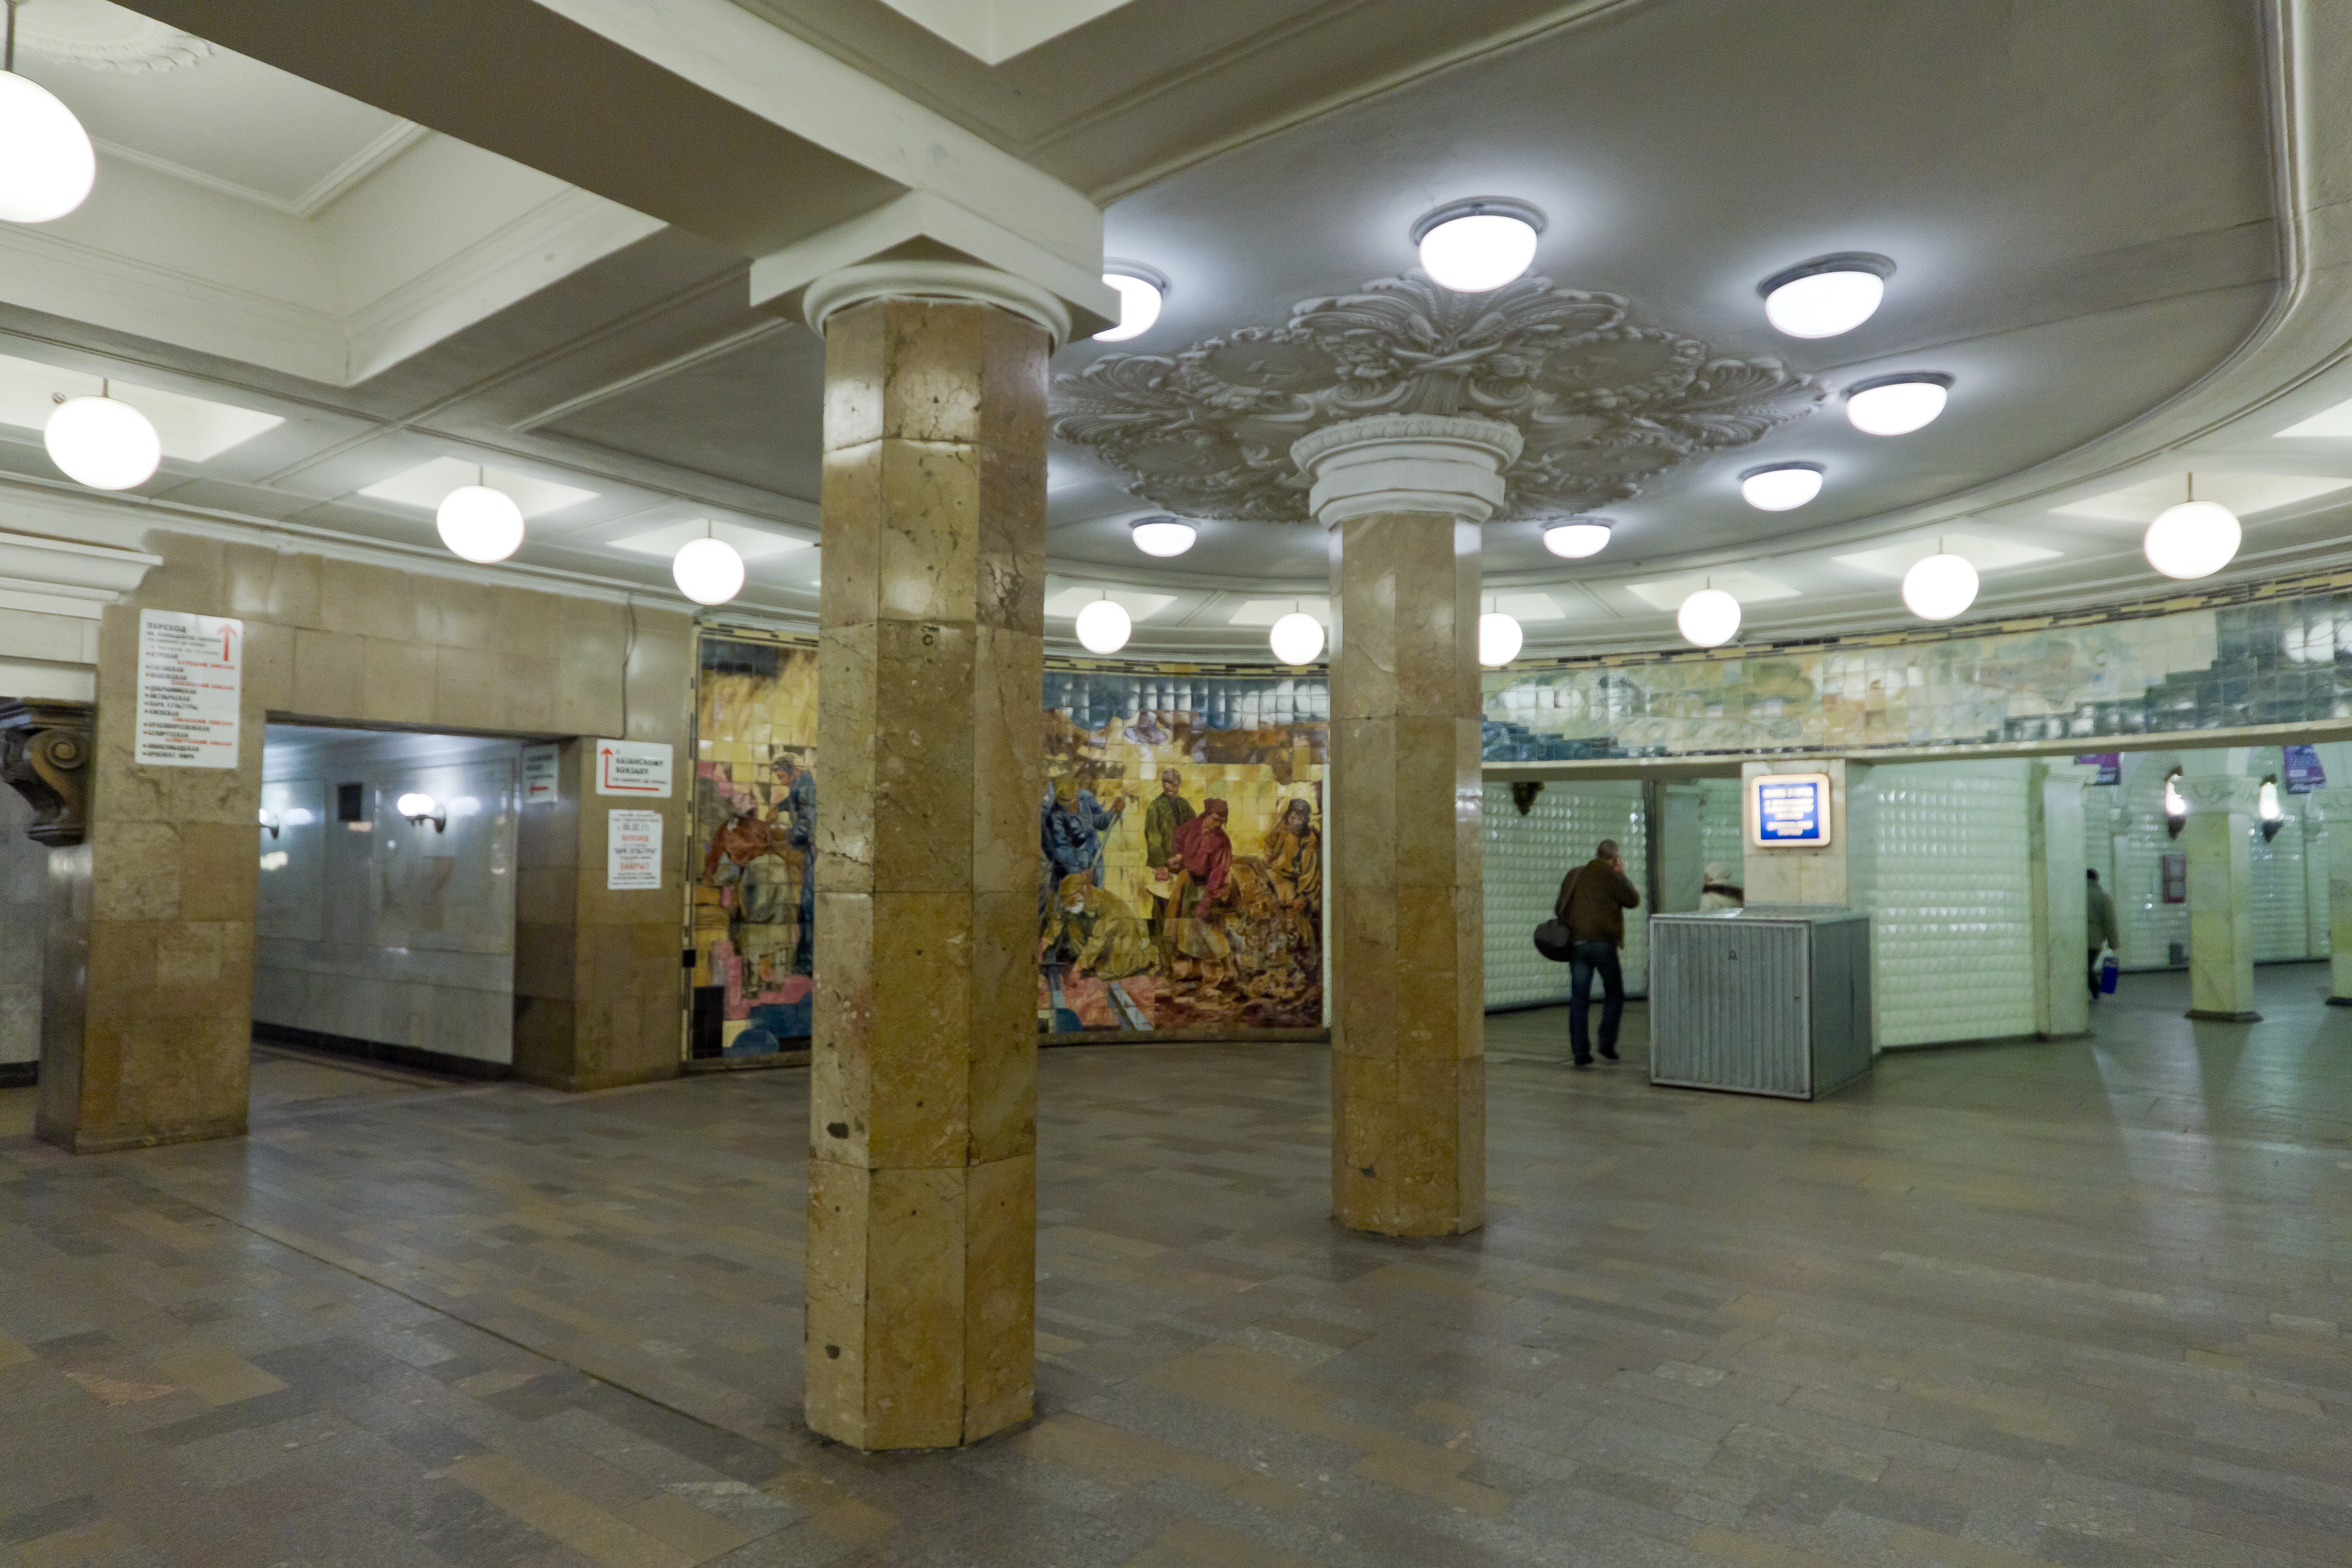 комсомольская площадь метро москва